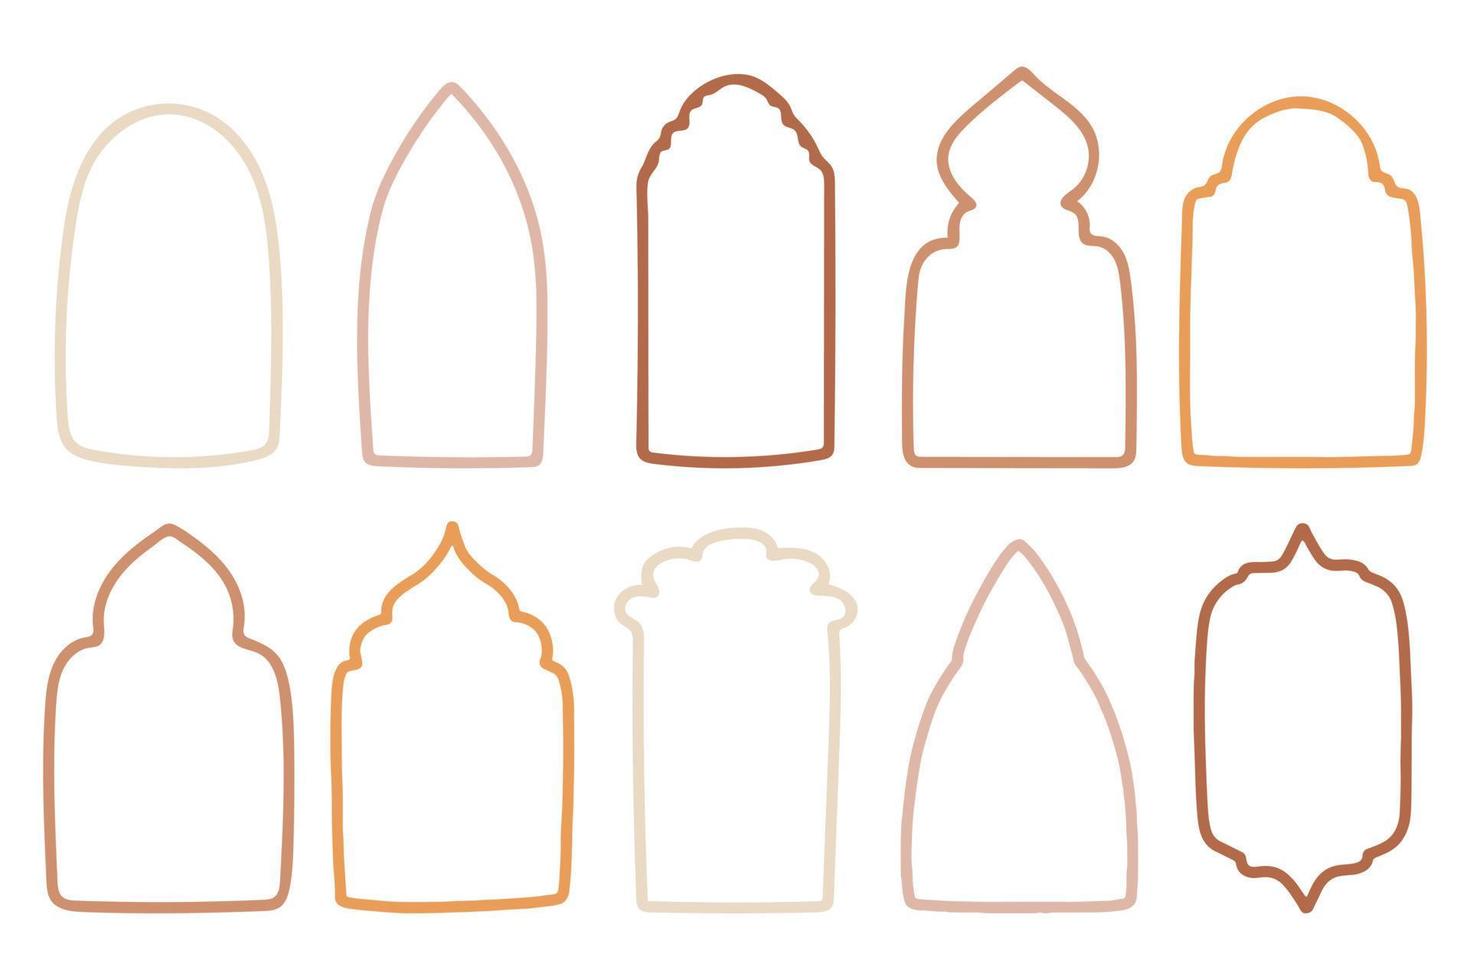 verzameling van Islamitisch ramen en bogen in oosters stijl met modern boho ontwerp, maan, moskee koepel en lantaarns. vector illustratie.